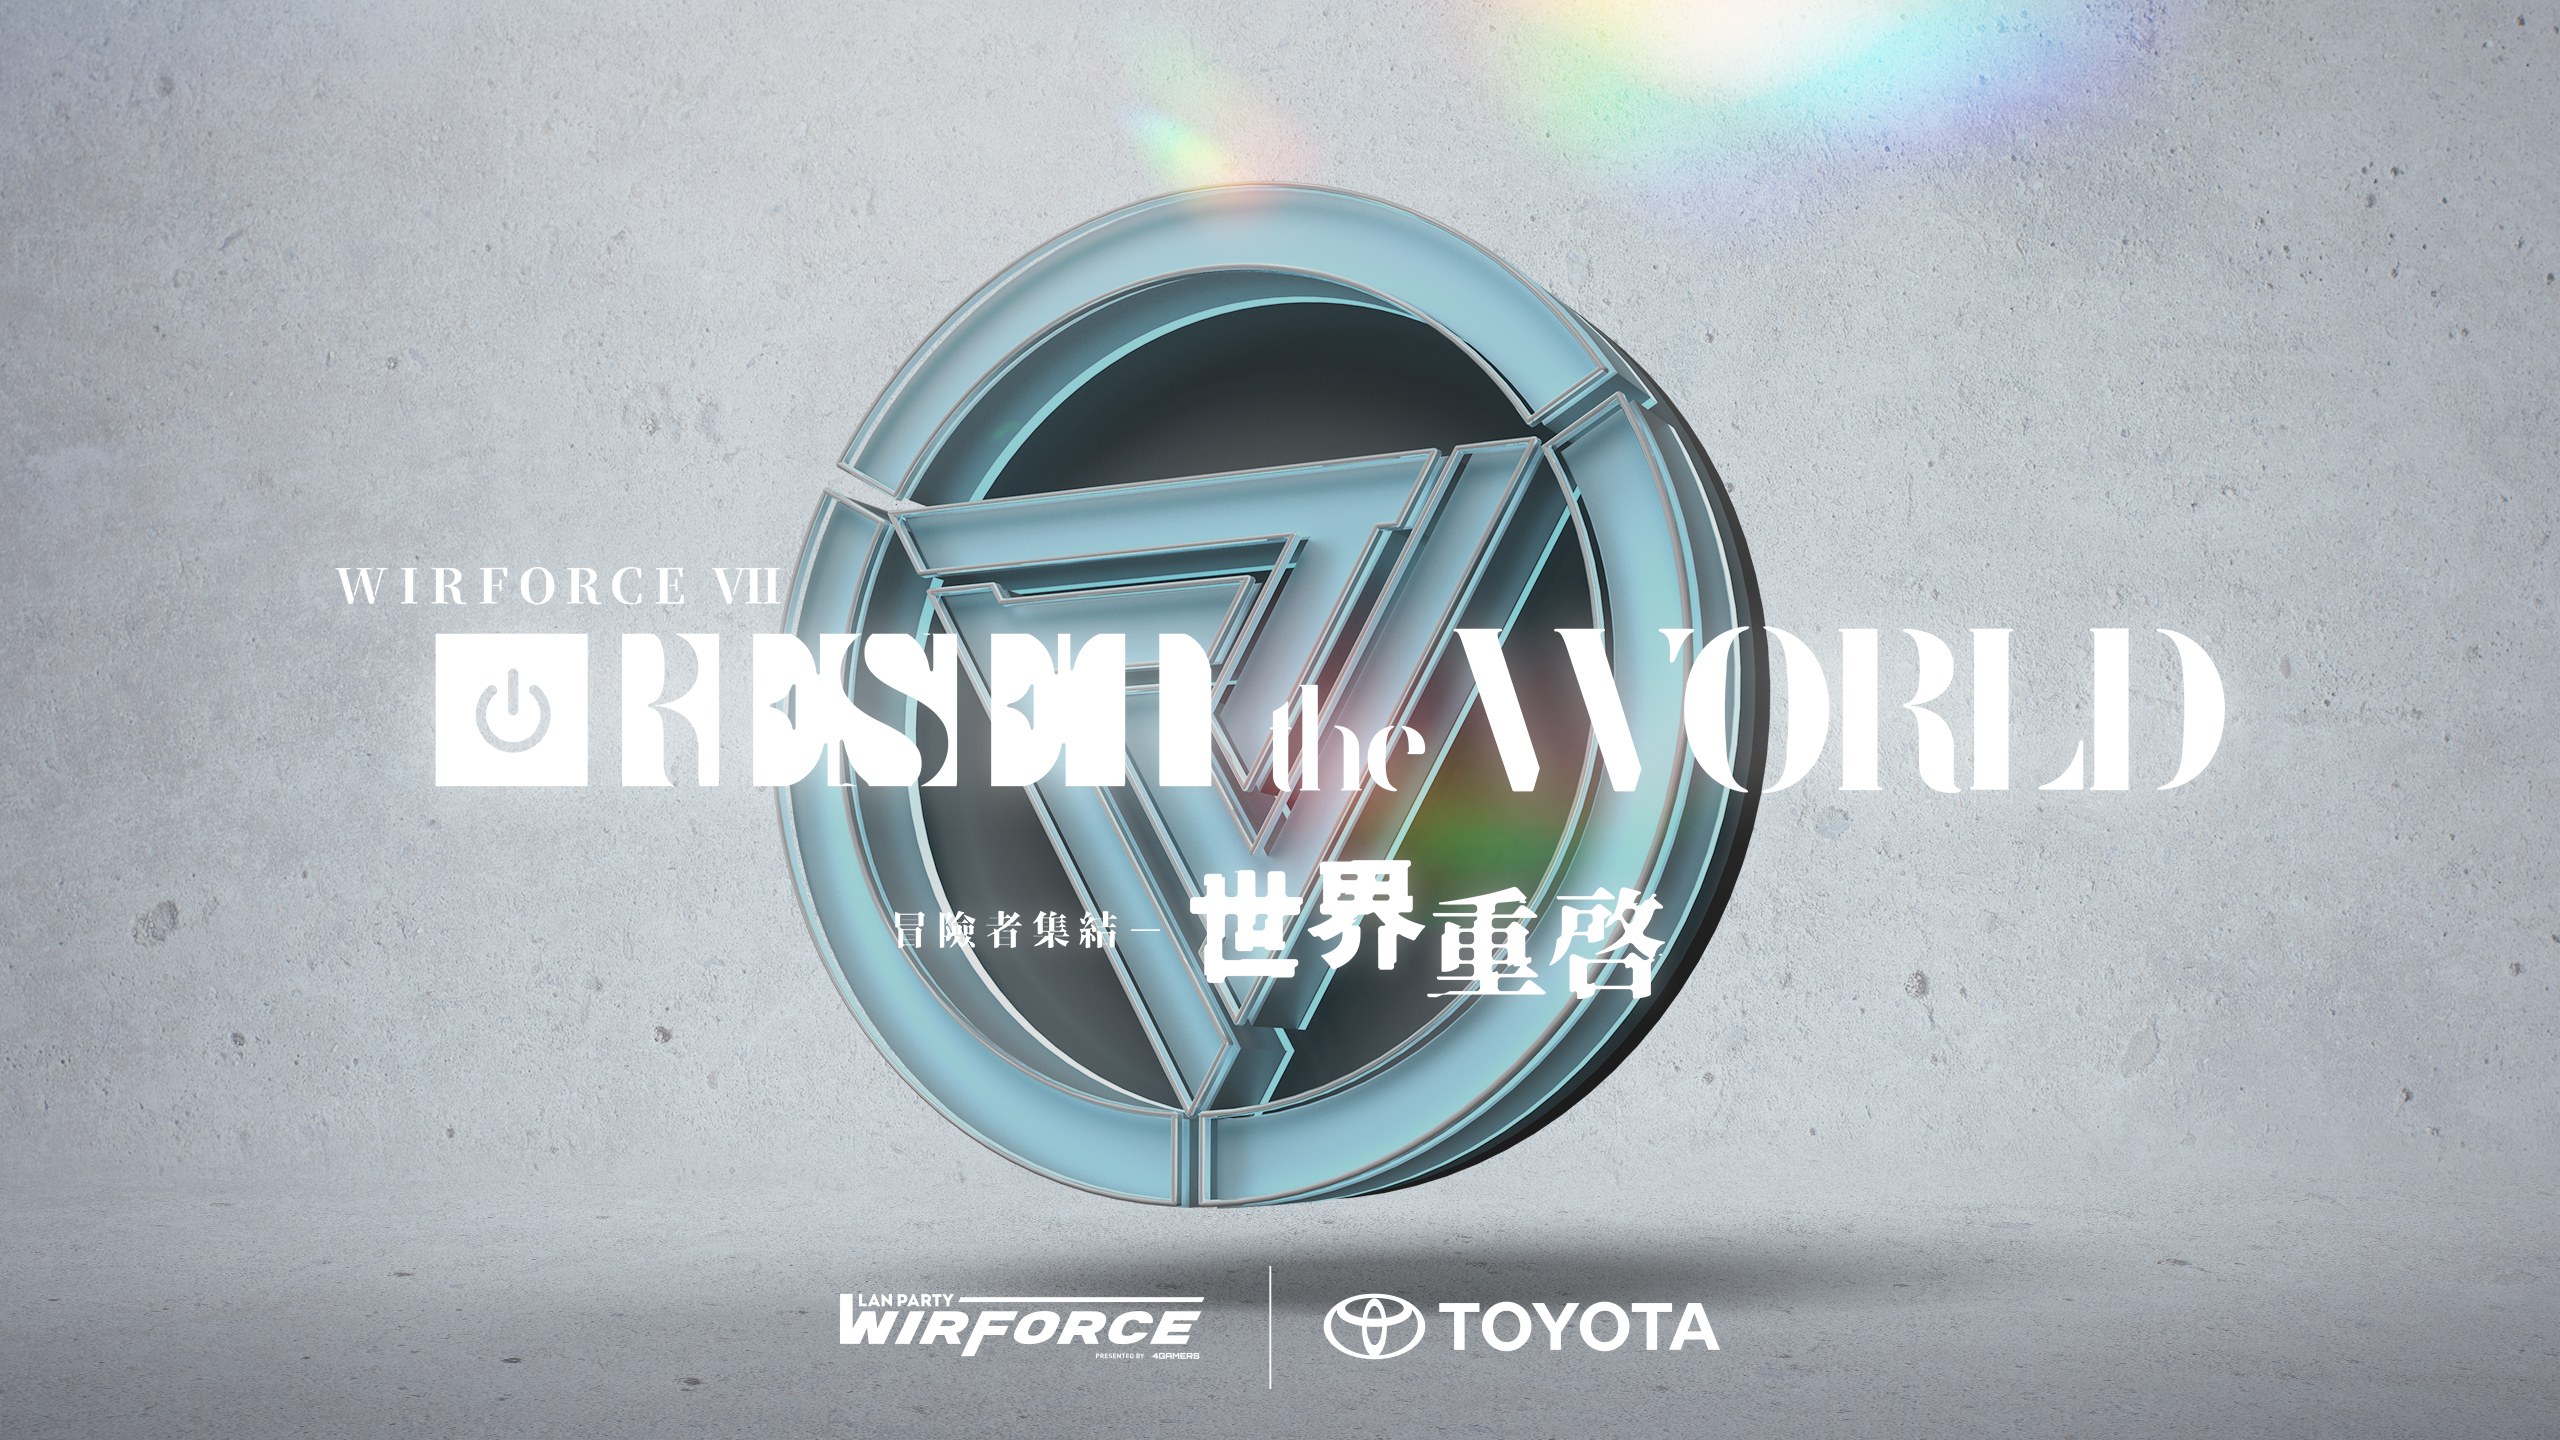  亞洲最大電競嘉年華WirForce 2022，睽違2年以世界重啟為主題再度重返花博園區，藉由4天3夜不斷電LAN PARTY與各種豐富的線上線下娛樂內容重啟年終最大娛樂盛事。官方提供